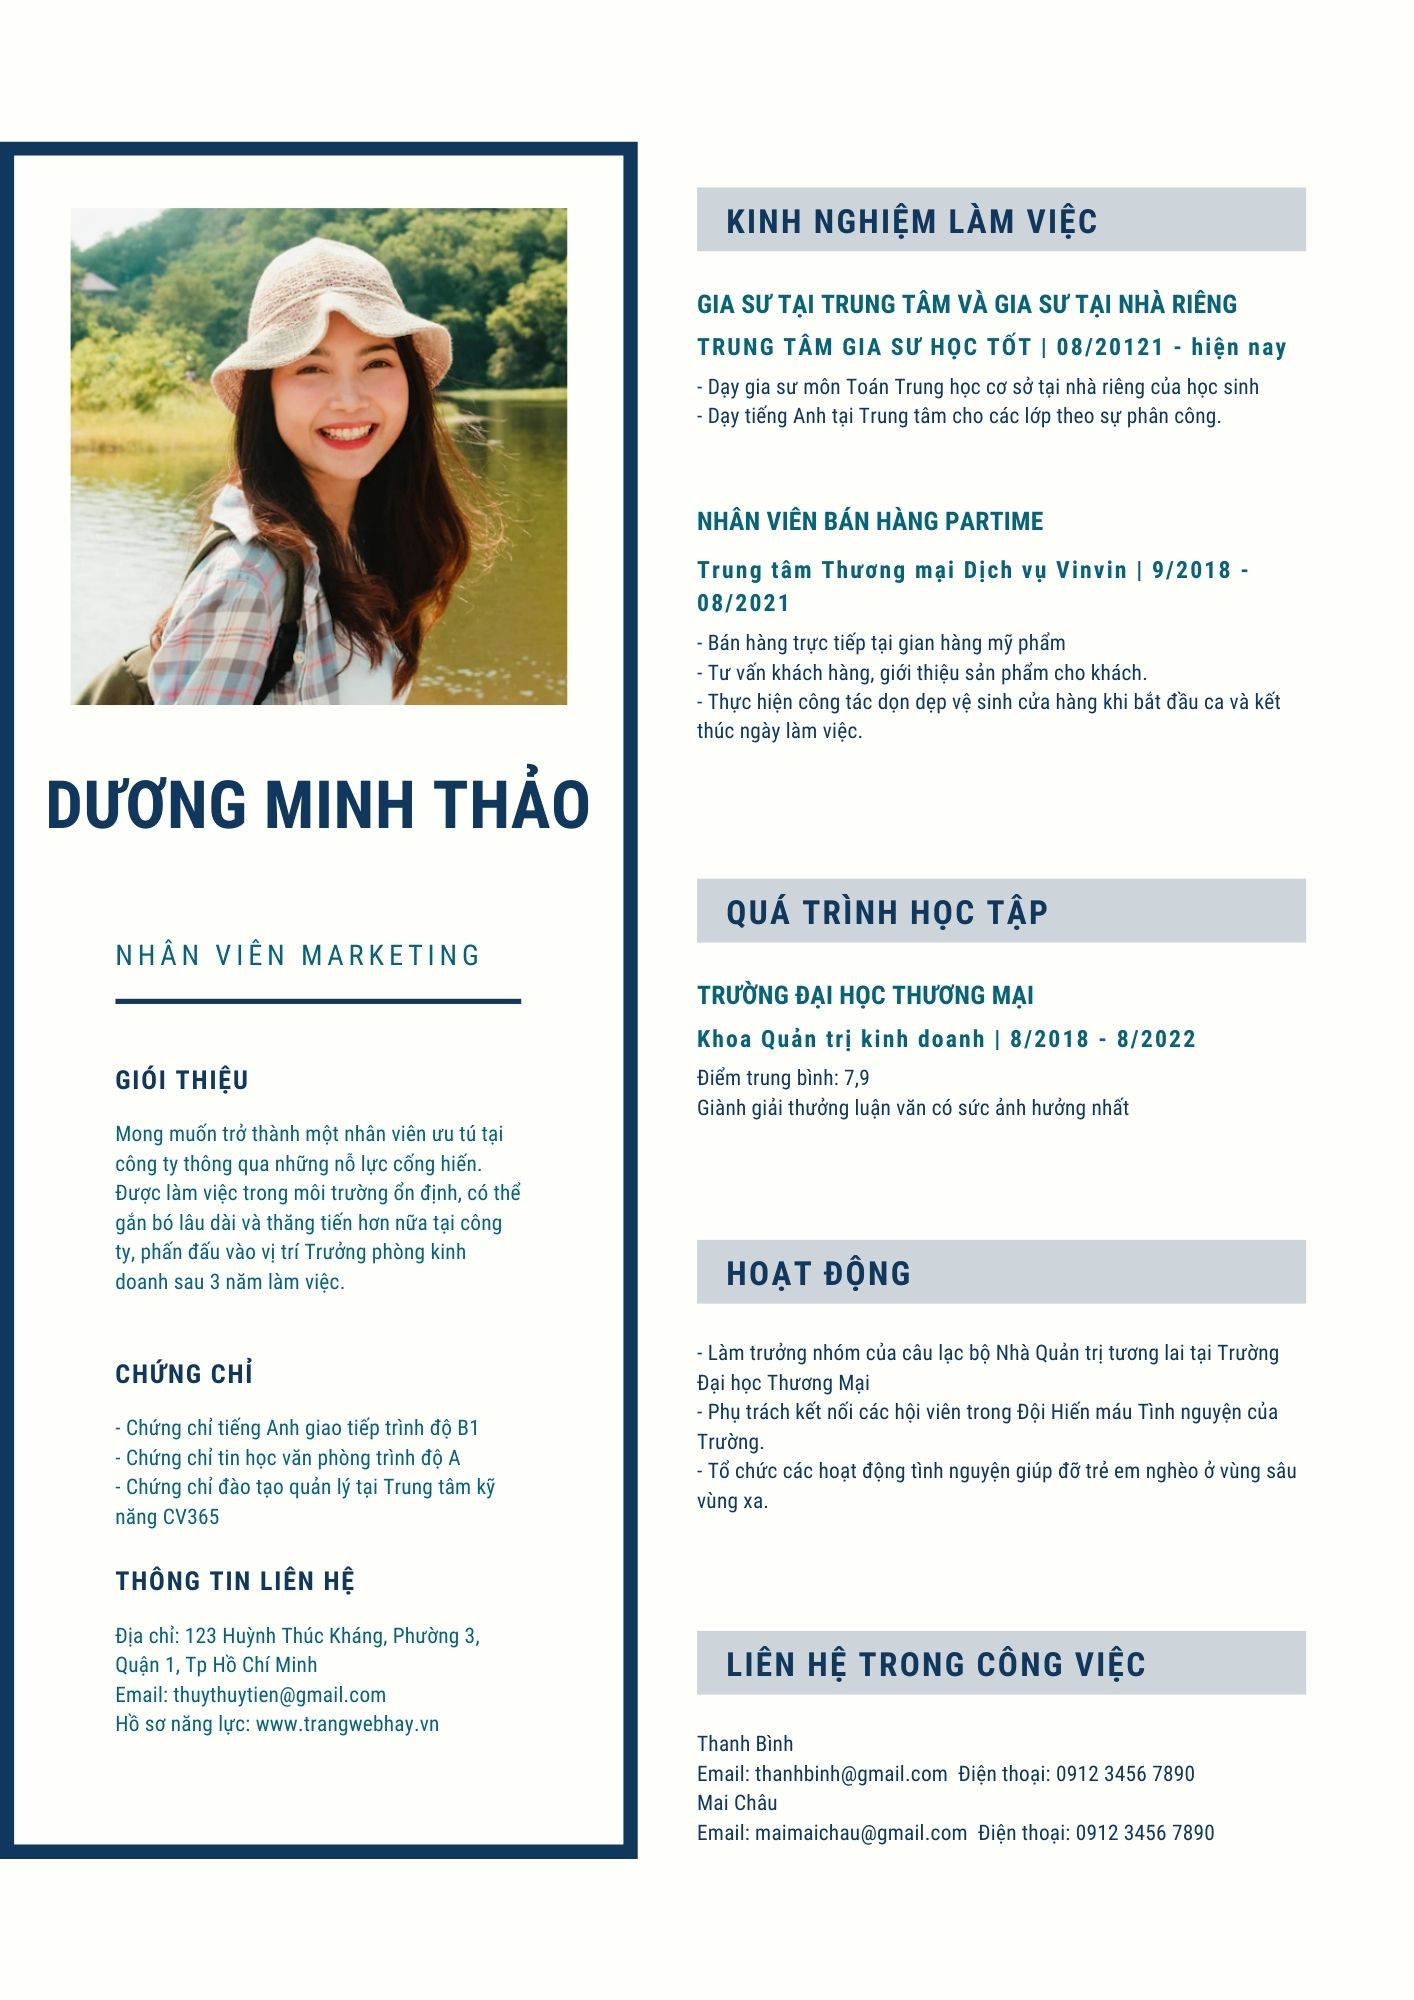 Tải mẫu CV tiếng Việt cho sinh viên mới ra trường